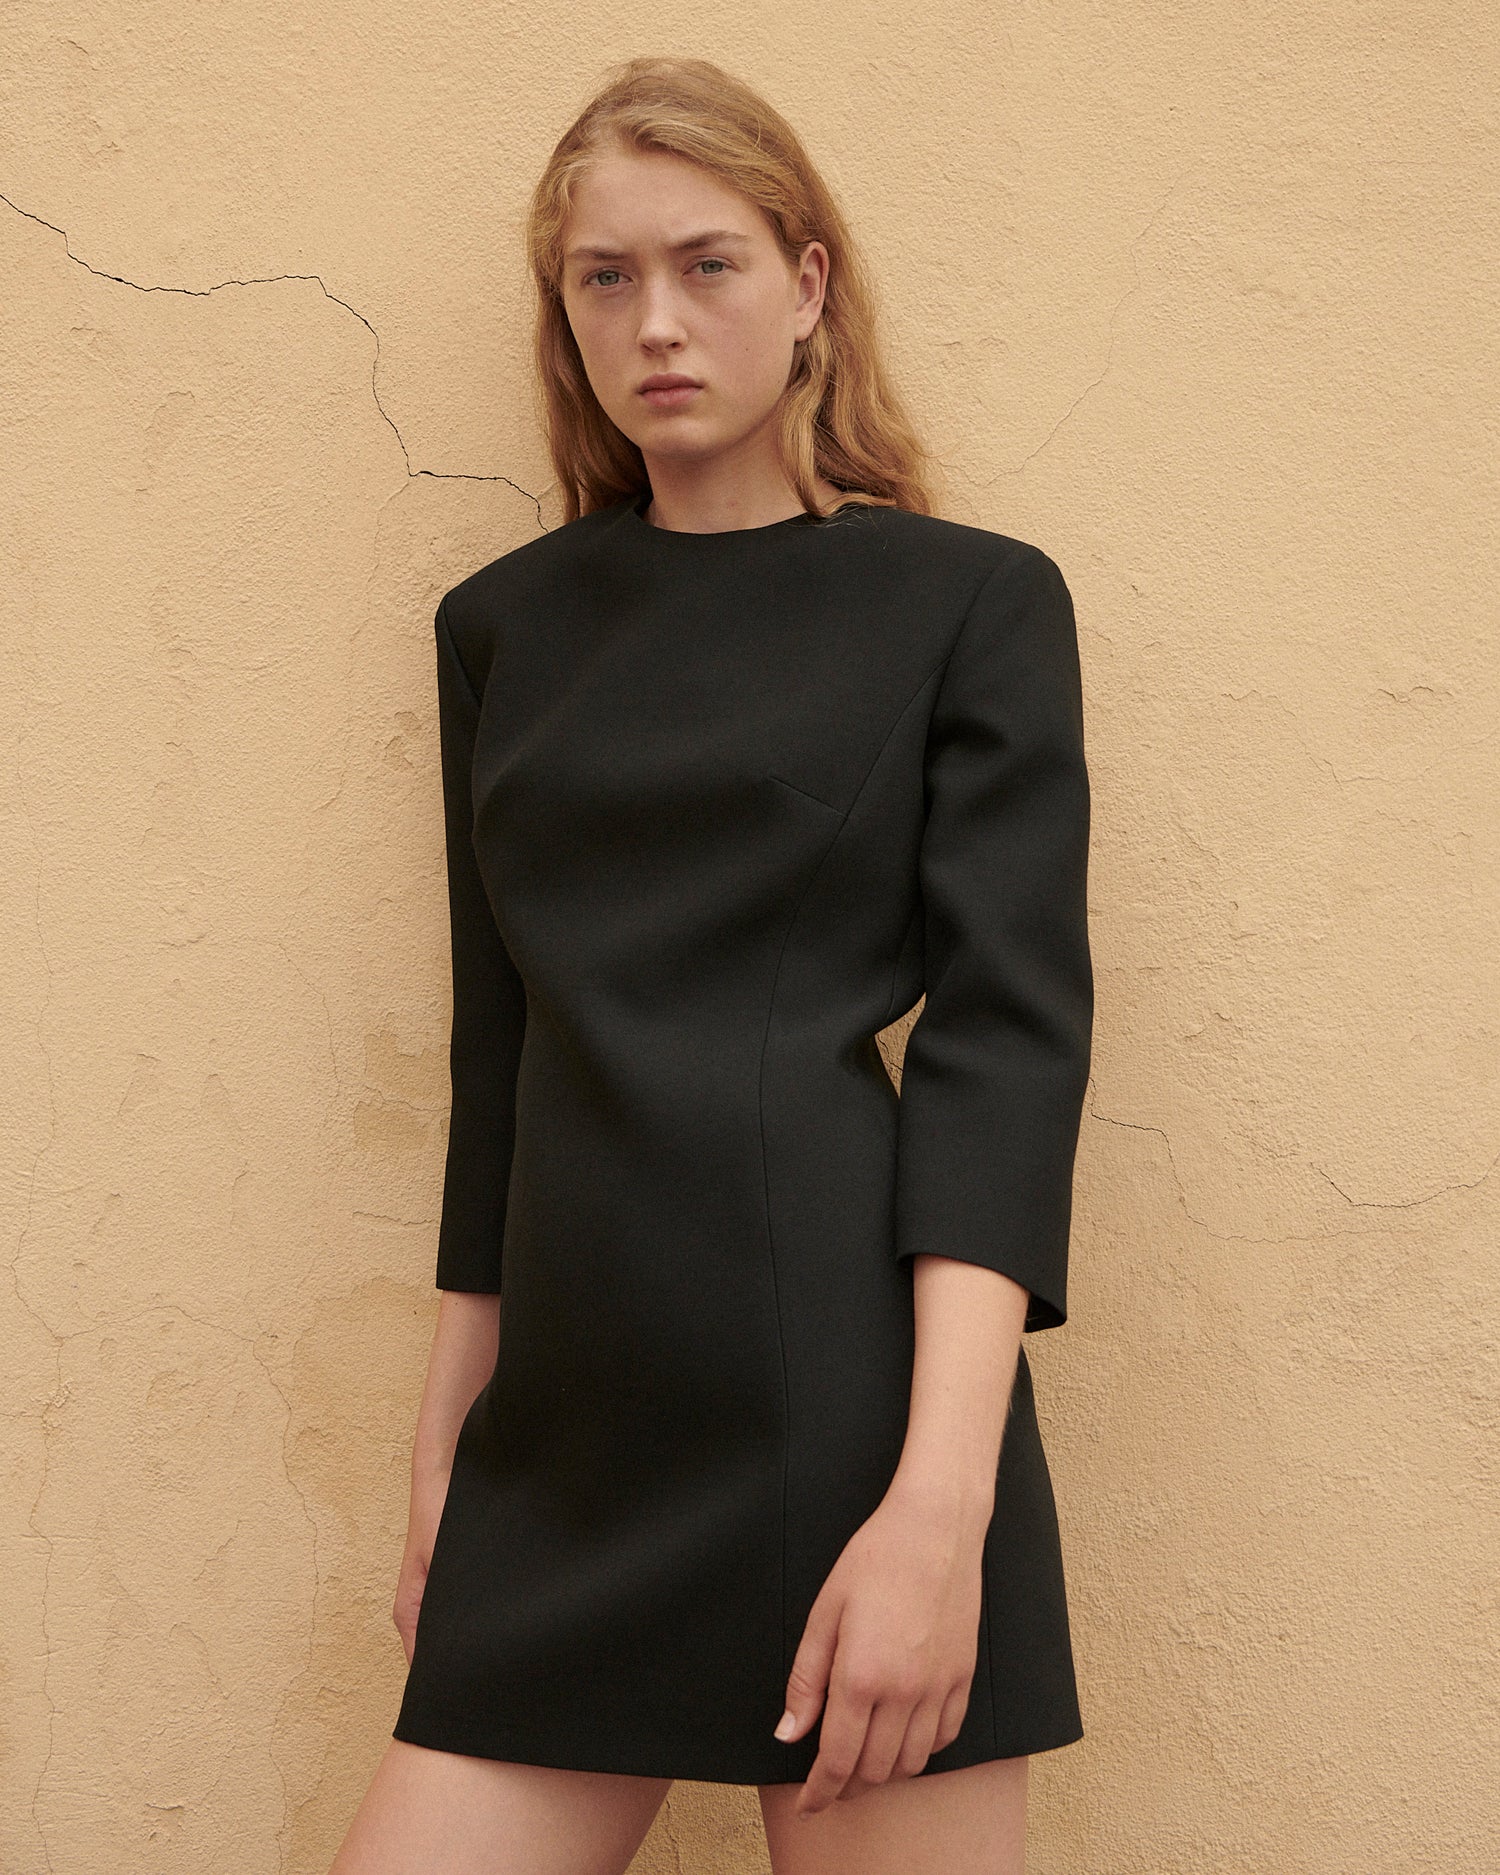 Dexter Dress in Wool Viscose, Black